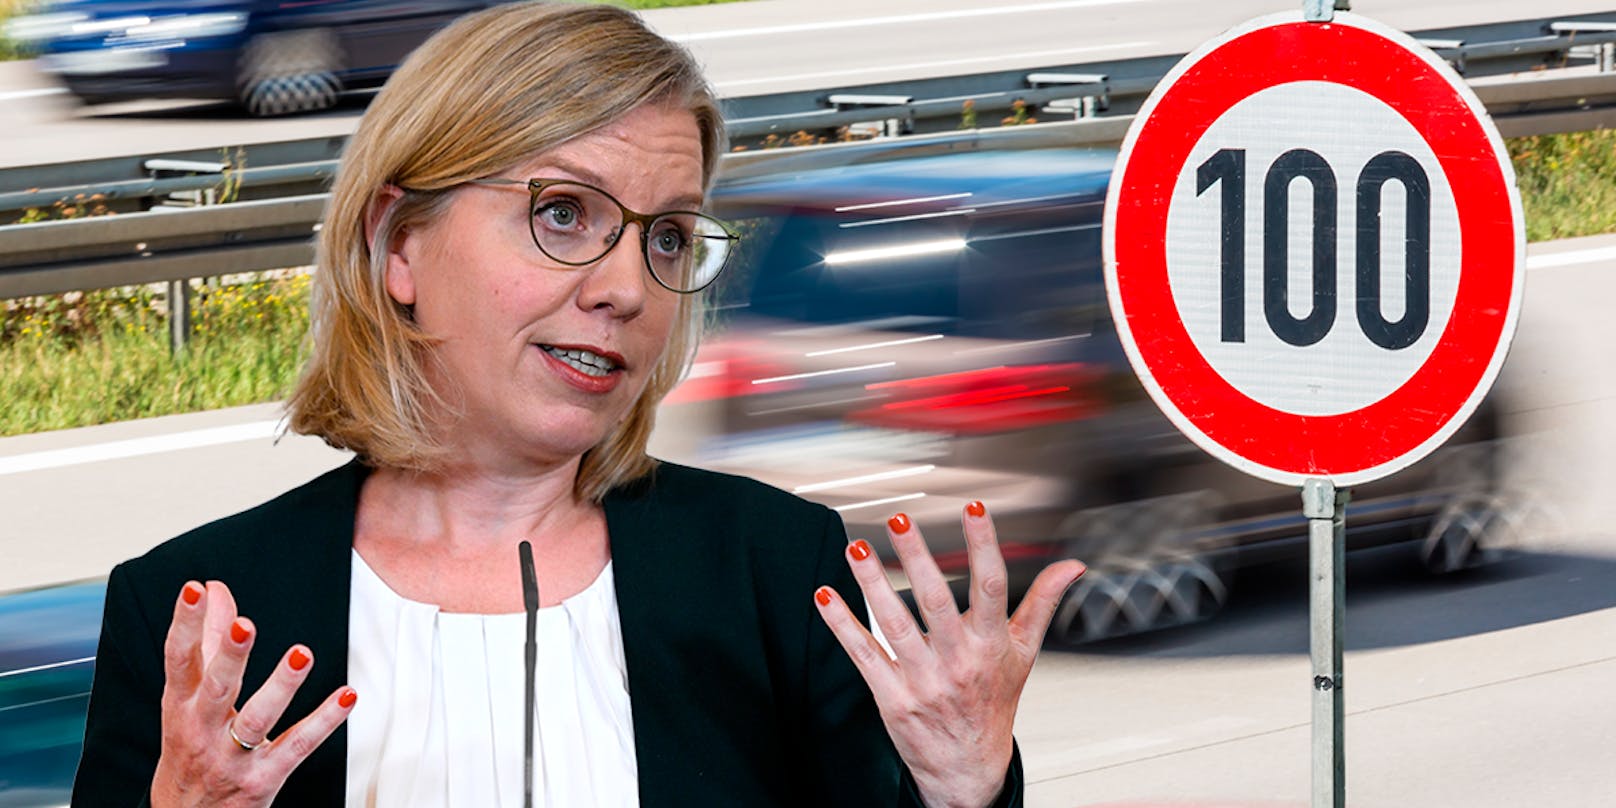 Ministerin Gewessler (Grünen) will eine&nbsp;Senkung des Tempolimits auf Autobahnen diskutieren:&nbsp;"Es ist gescheit, gerade jetzt runter vom Gas"